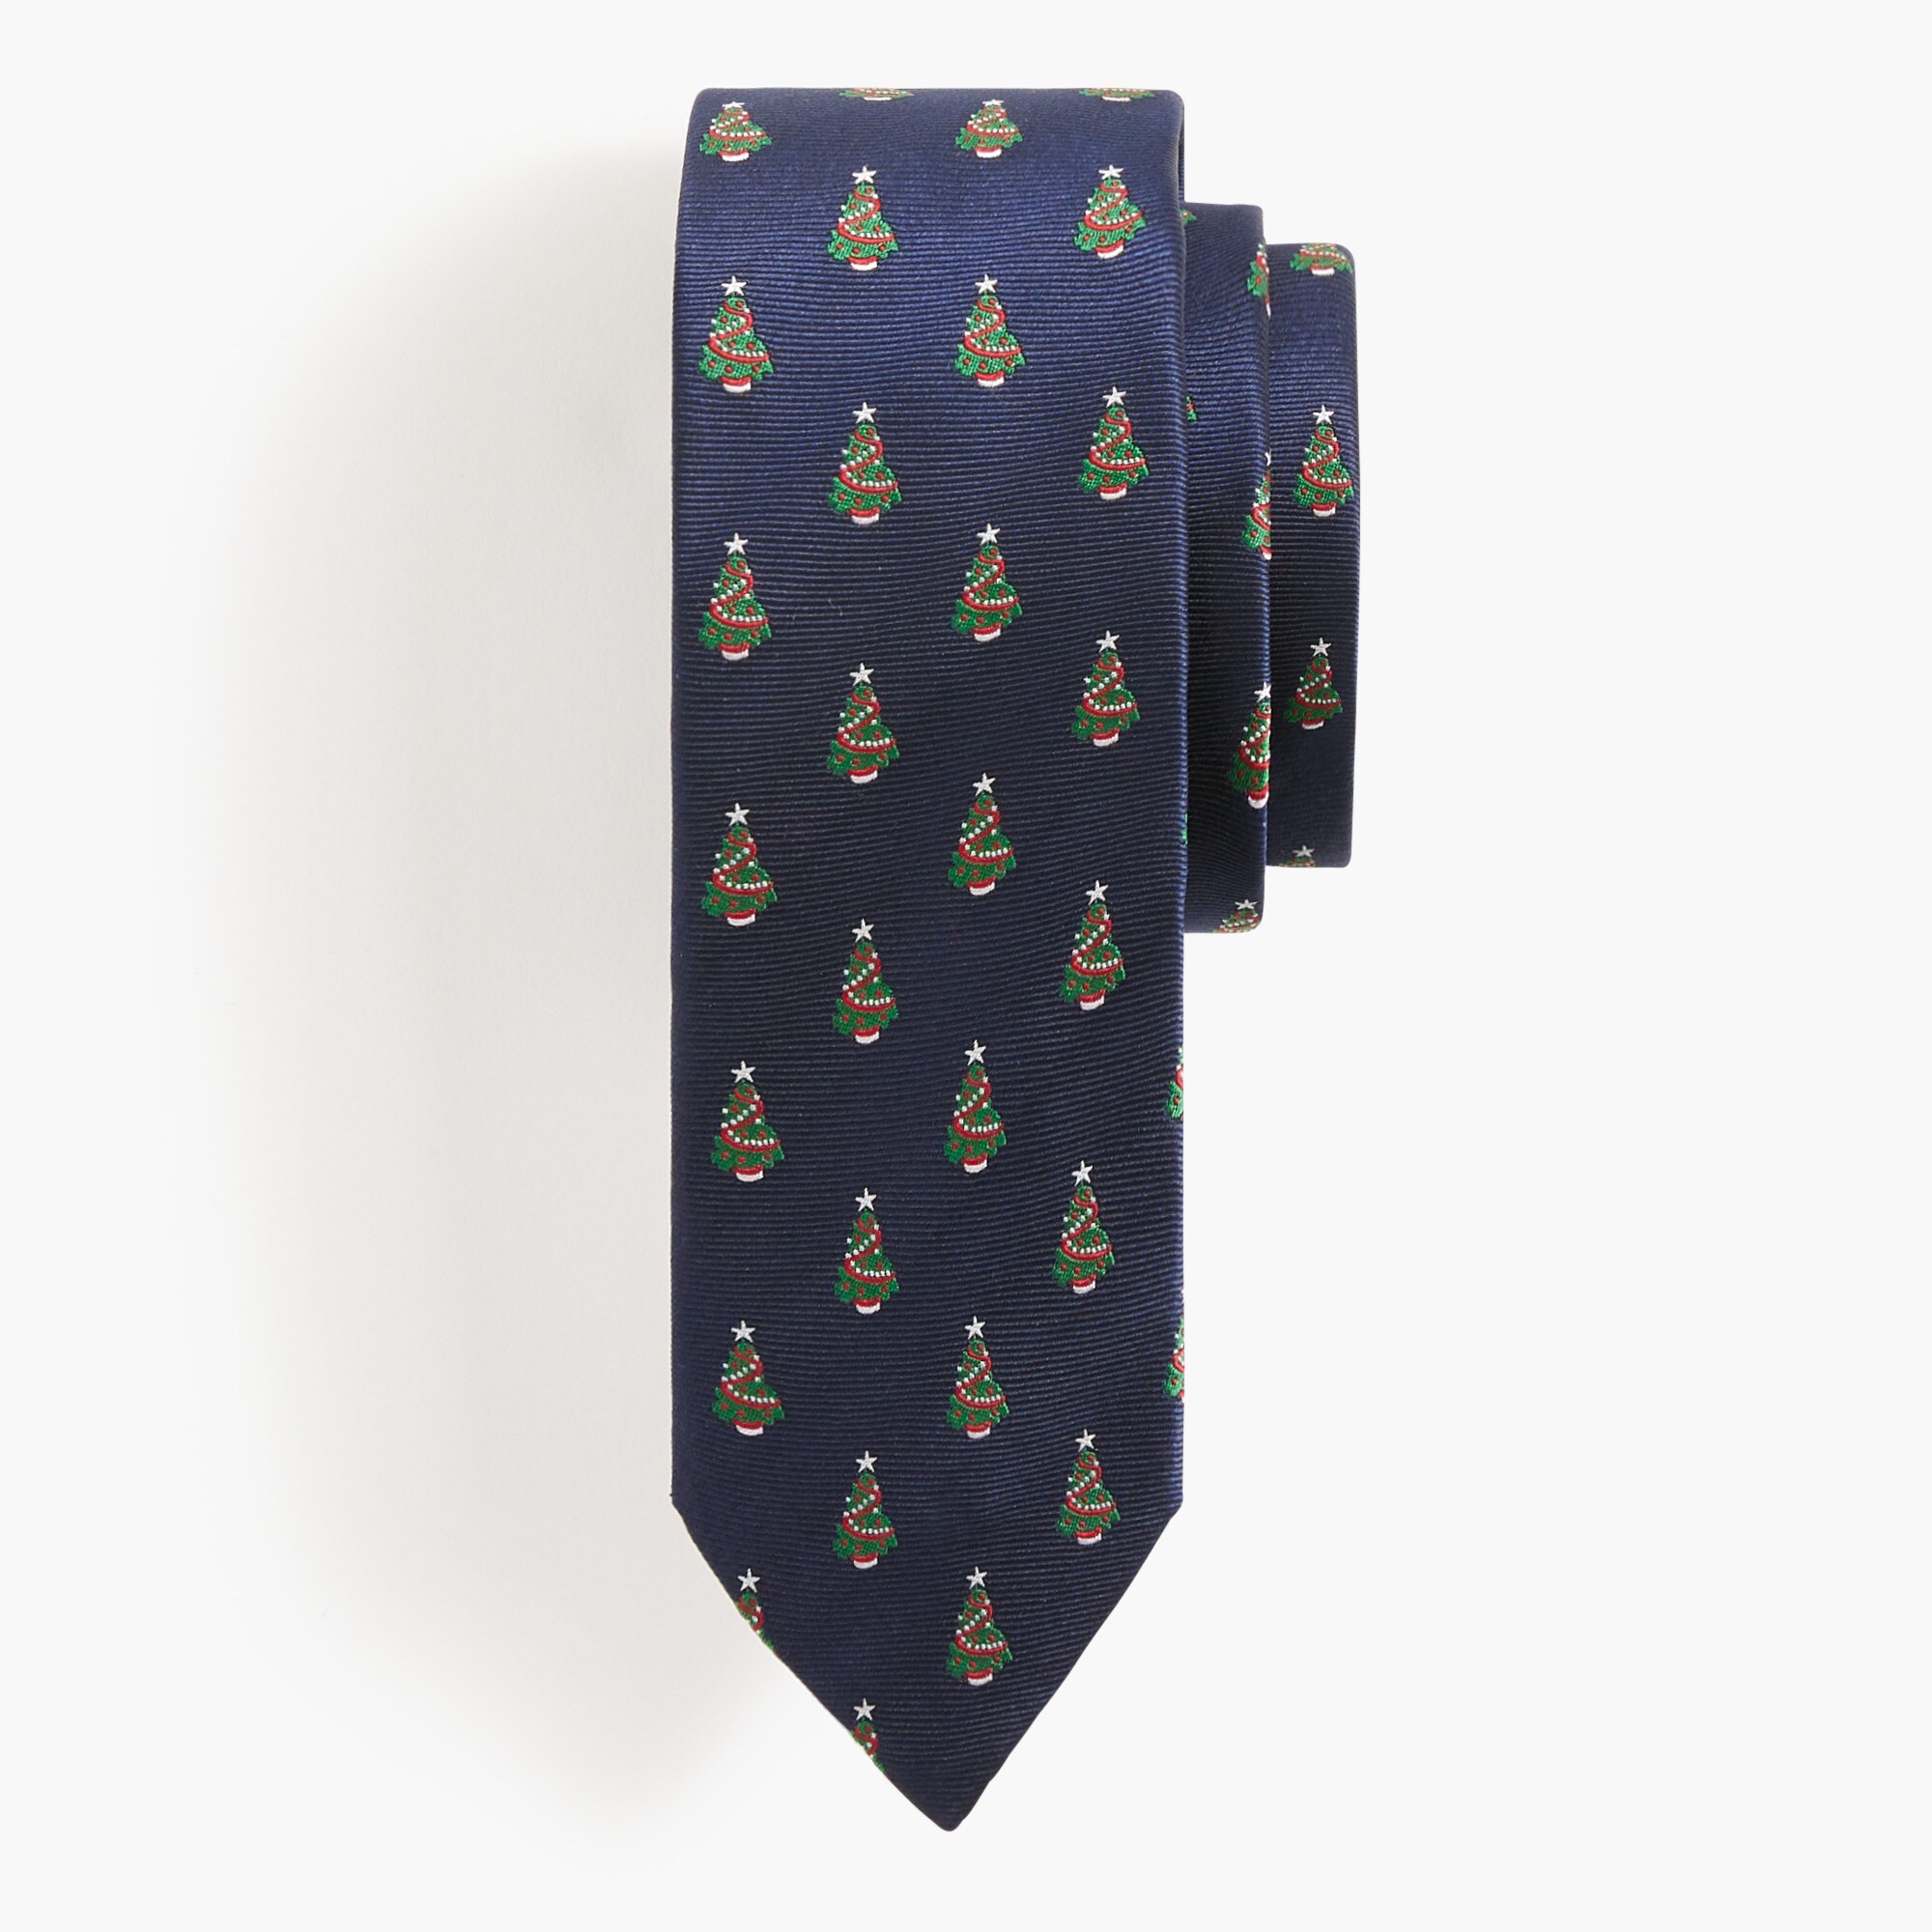  Tree tie